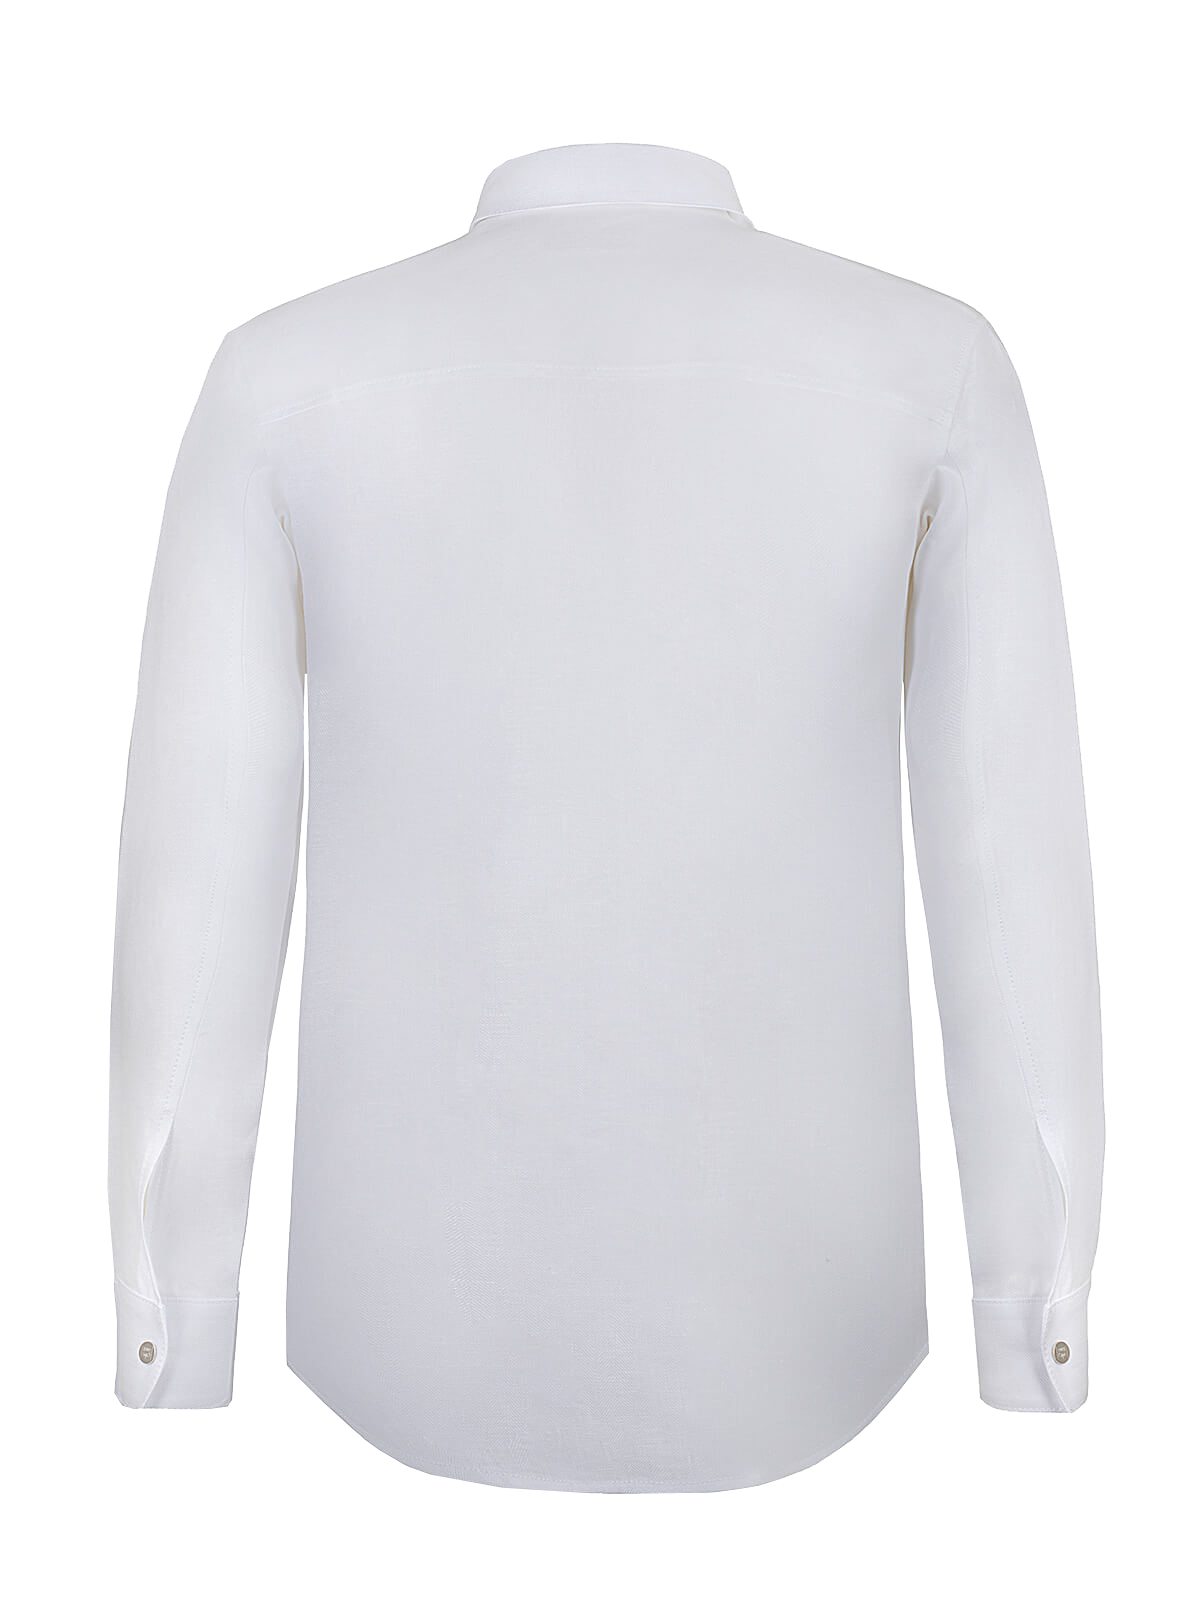 Camicia Zip Malta 100% Capri for man linen white shirt back